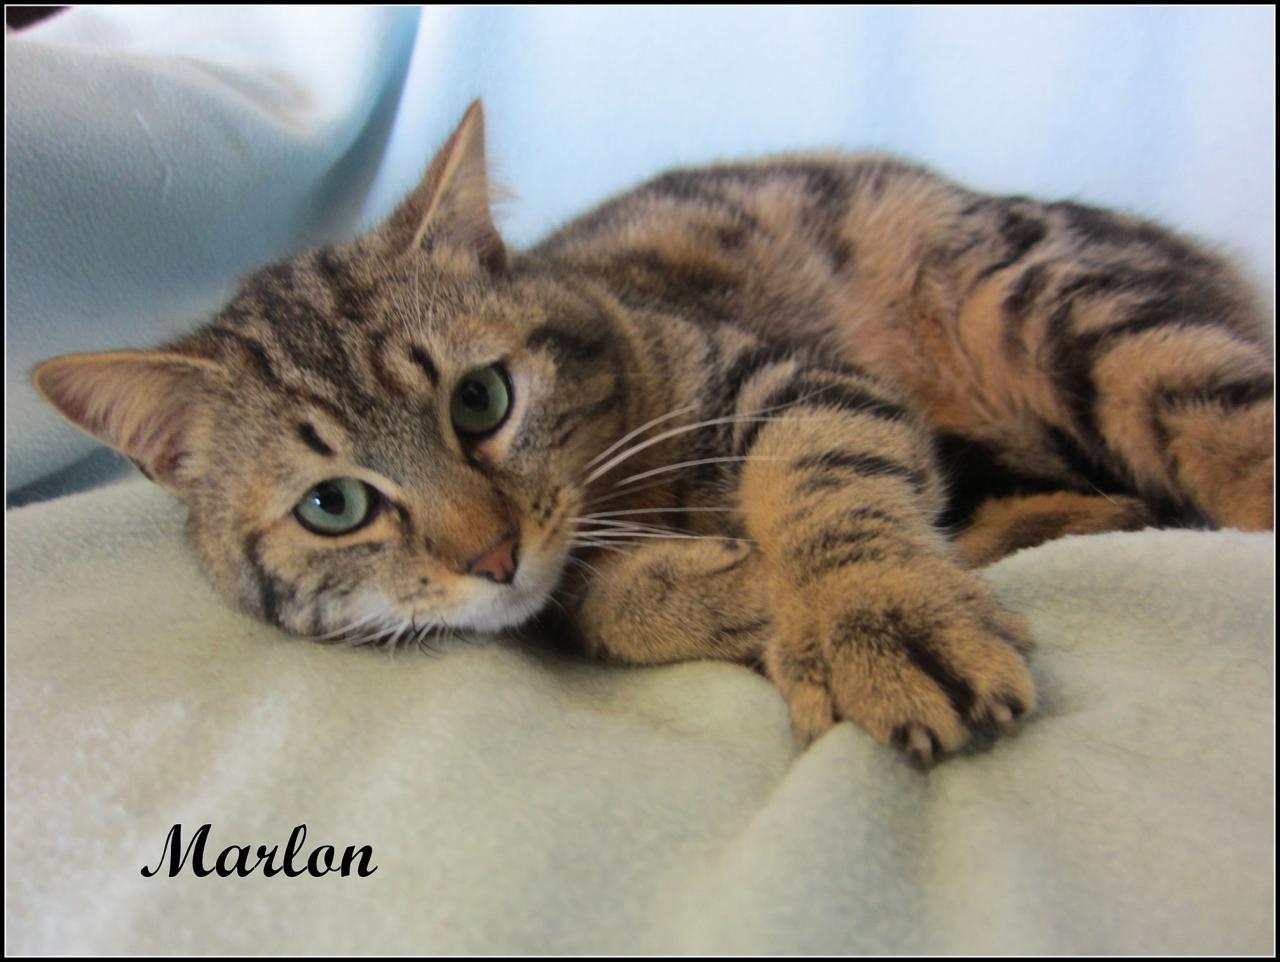 MARLON - M - Né le 01/05/2015 - Adopté en juillet 2016